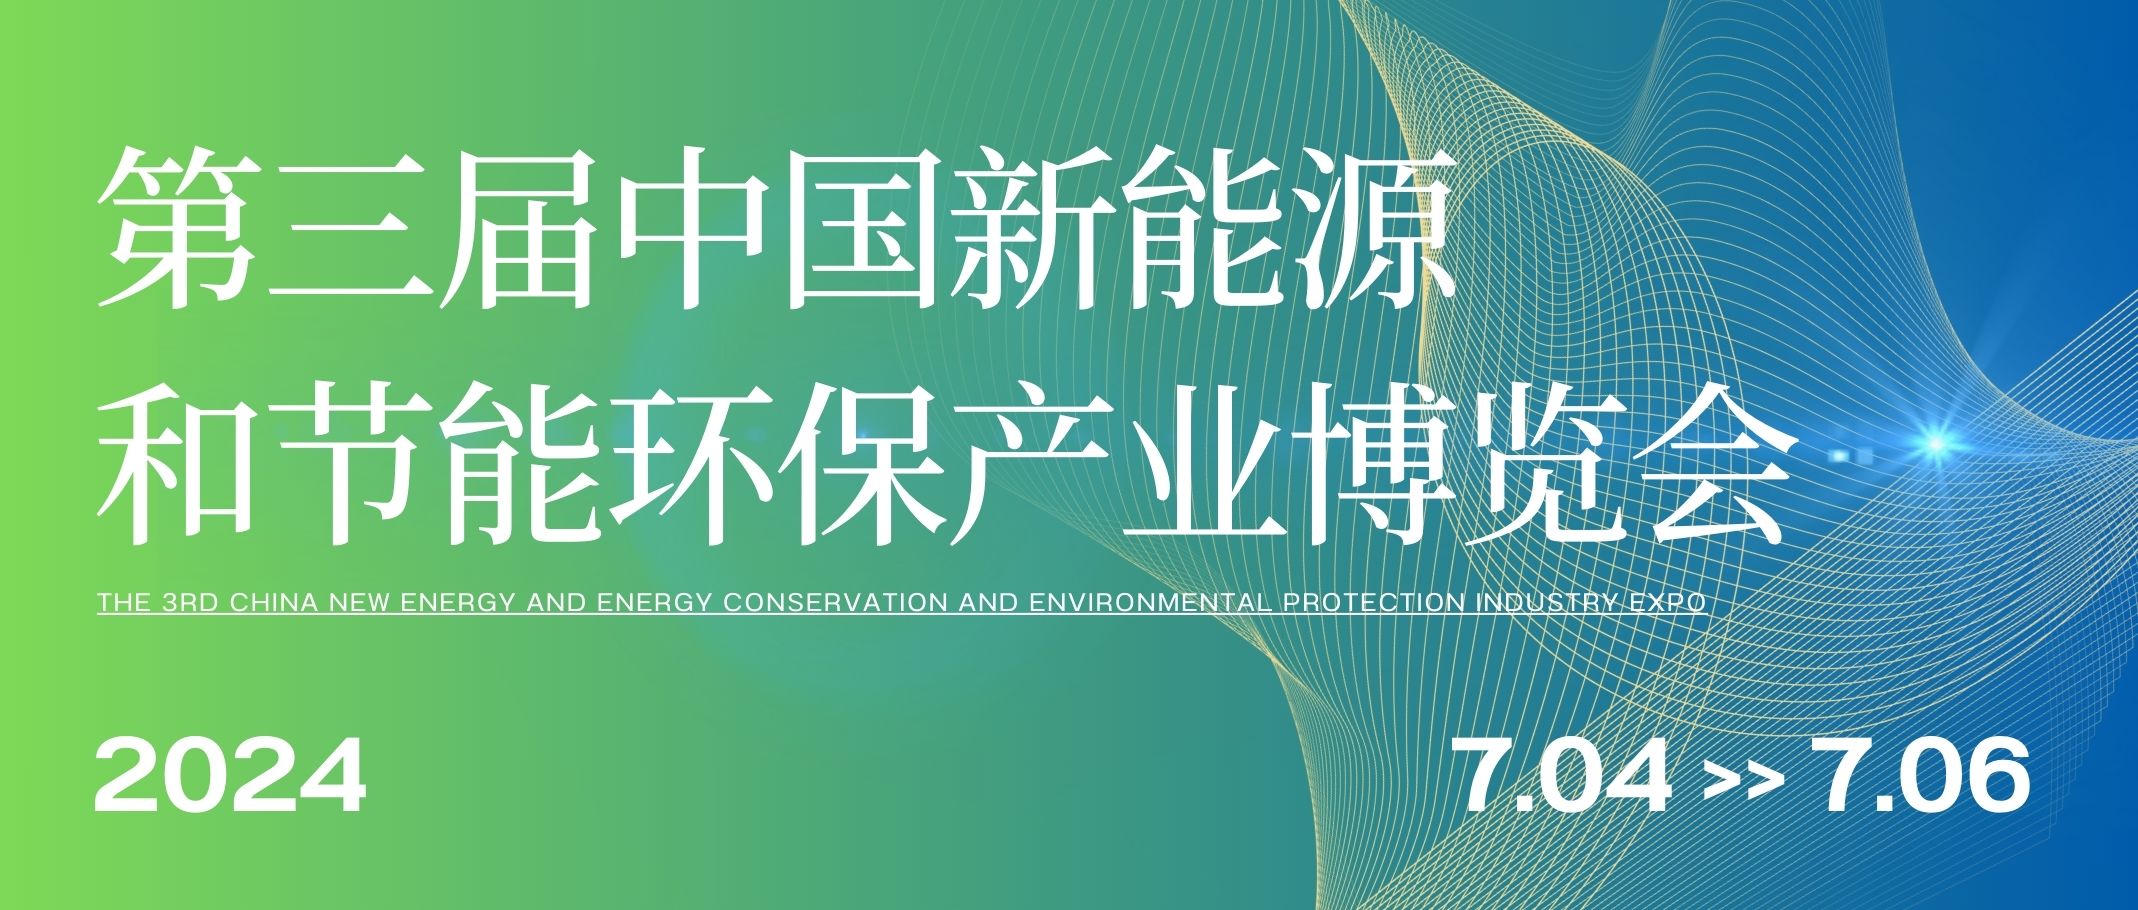 企业动态 | 安徽置润即将亮相“第三届中国新能源和节能环保产业博览会”